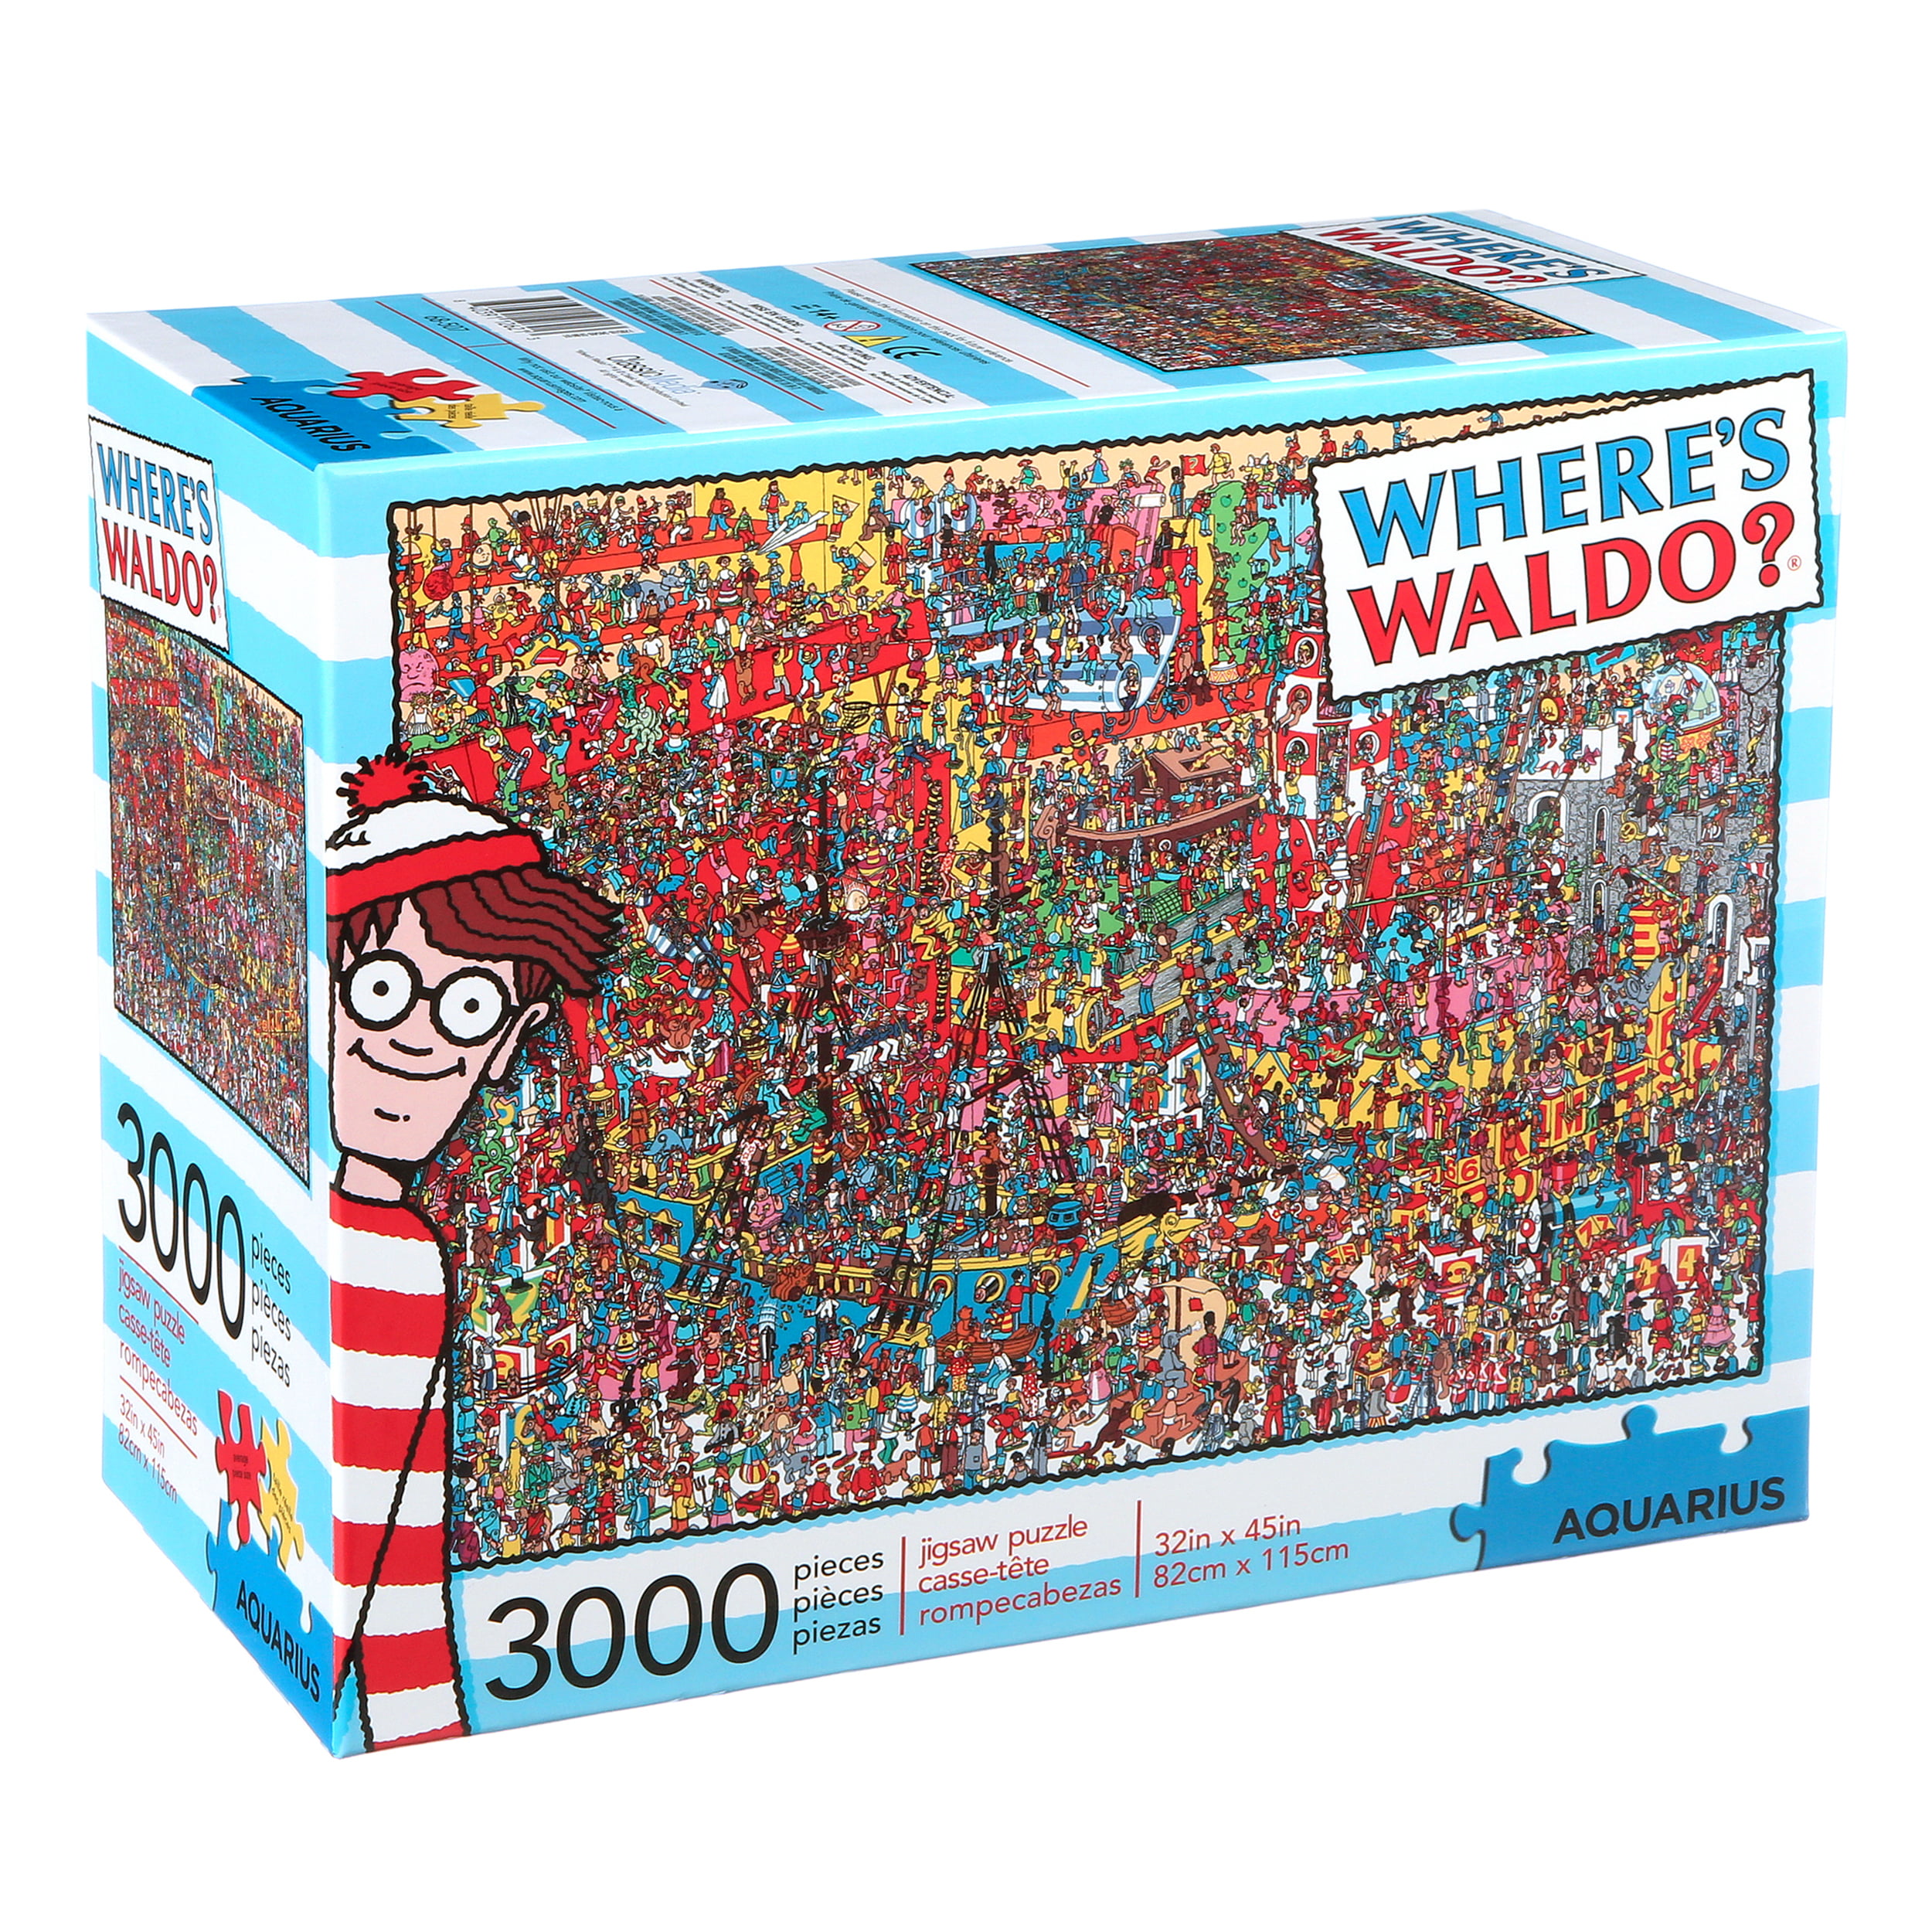 Aquarius - Where's Waldo Toys - 3000 Piece Jigsaw Puzzle - Walmart.com